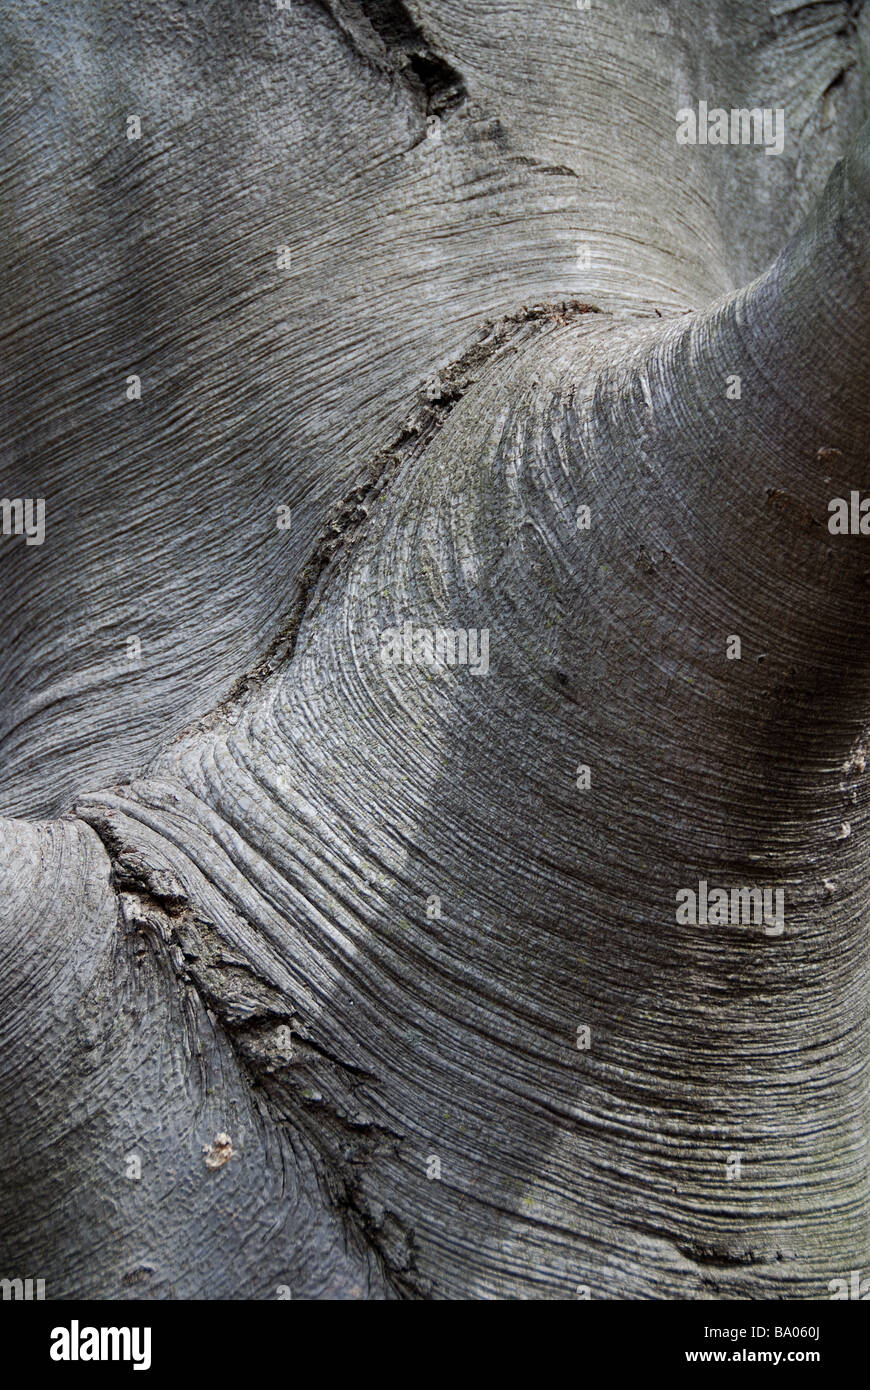 A closeup of the smooth textured bark of a European beech tree (Fagus sylvatica) Stock Photo